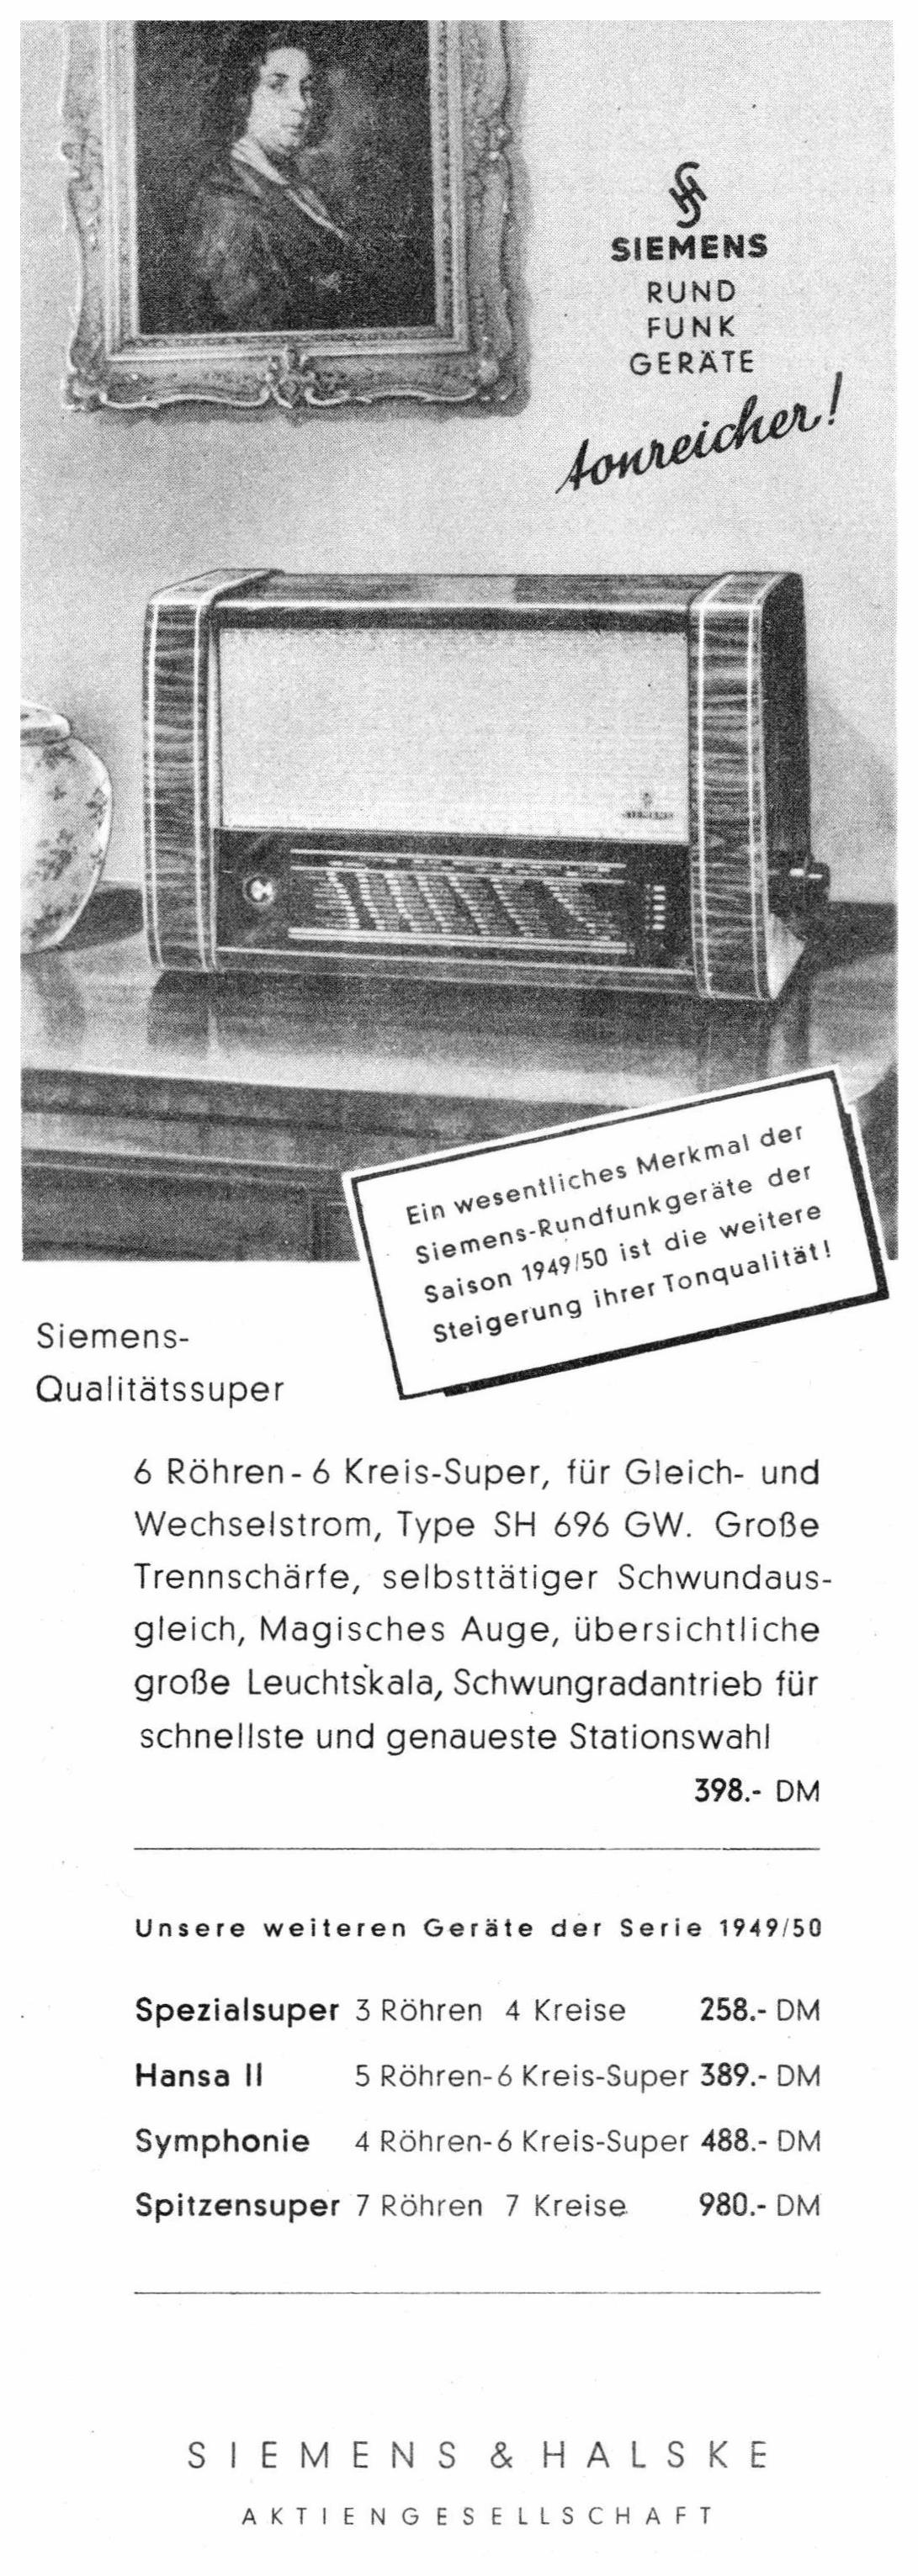 Siemens 1949 02.jpg